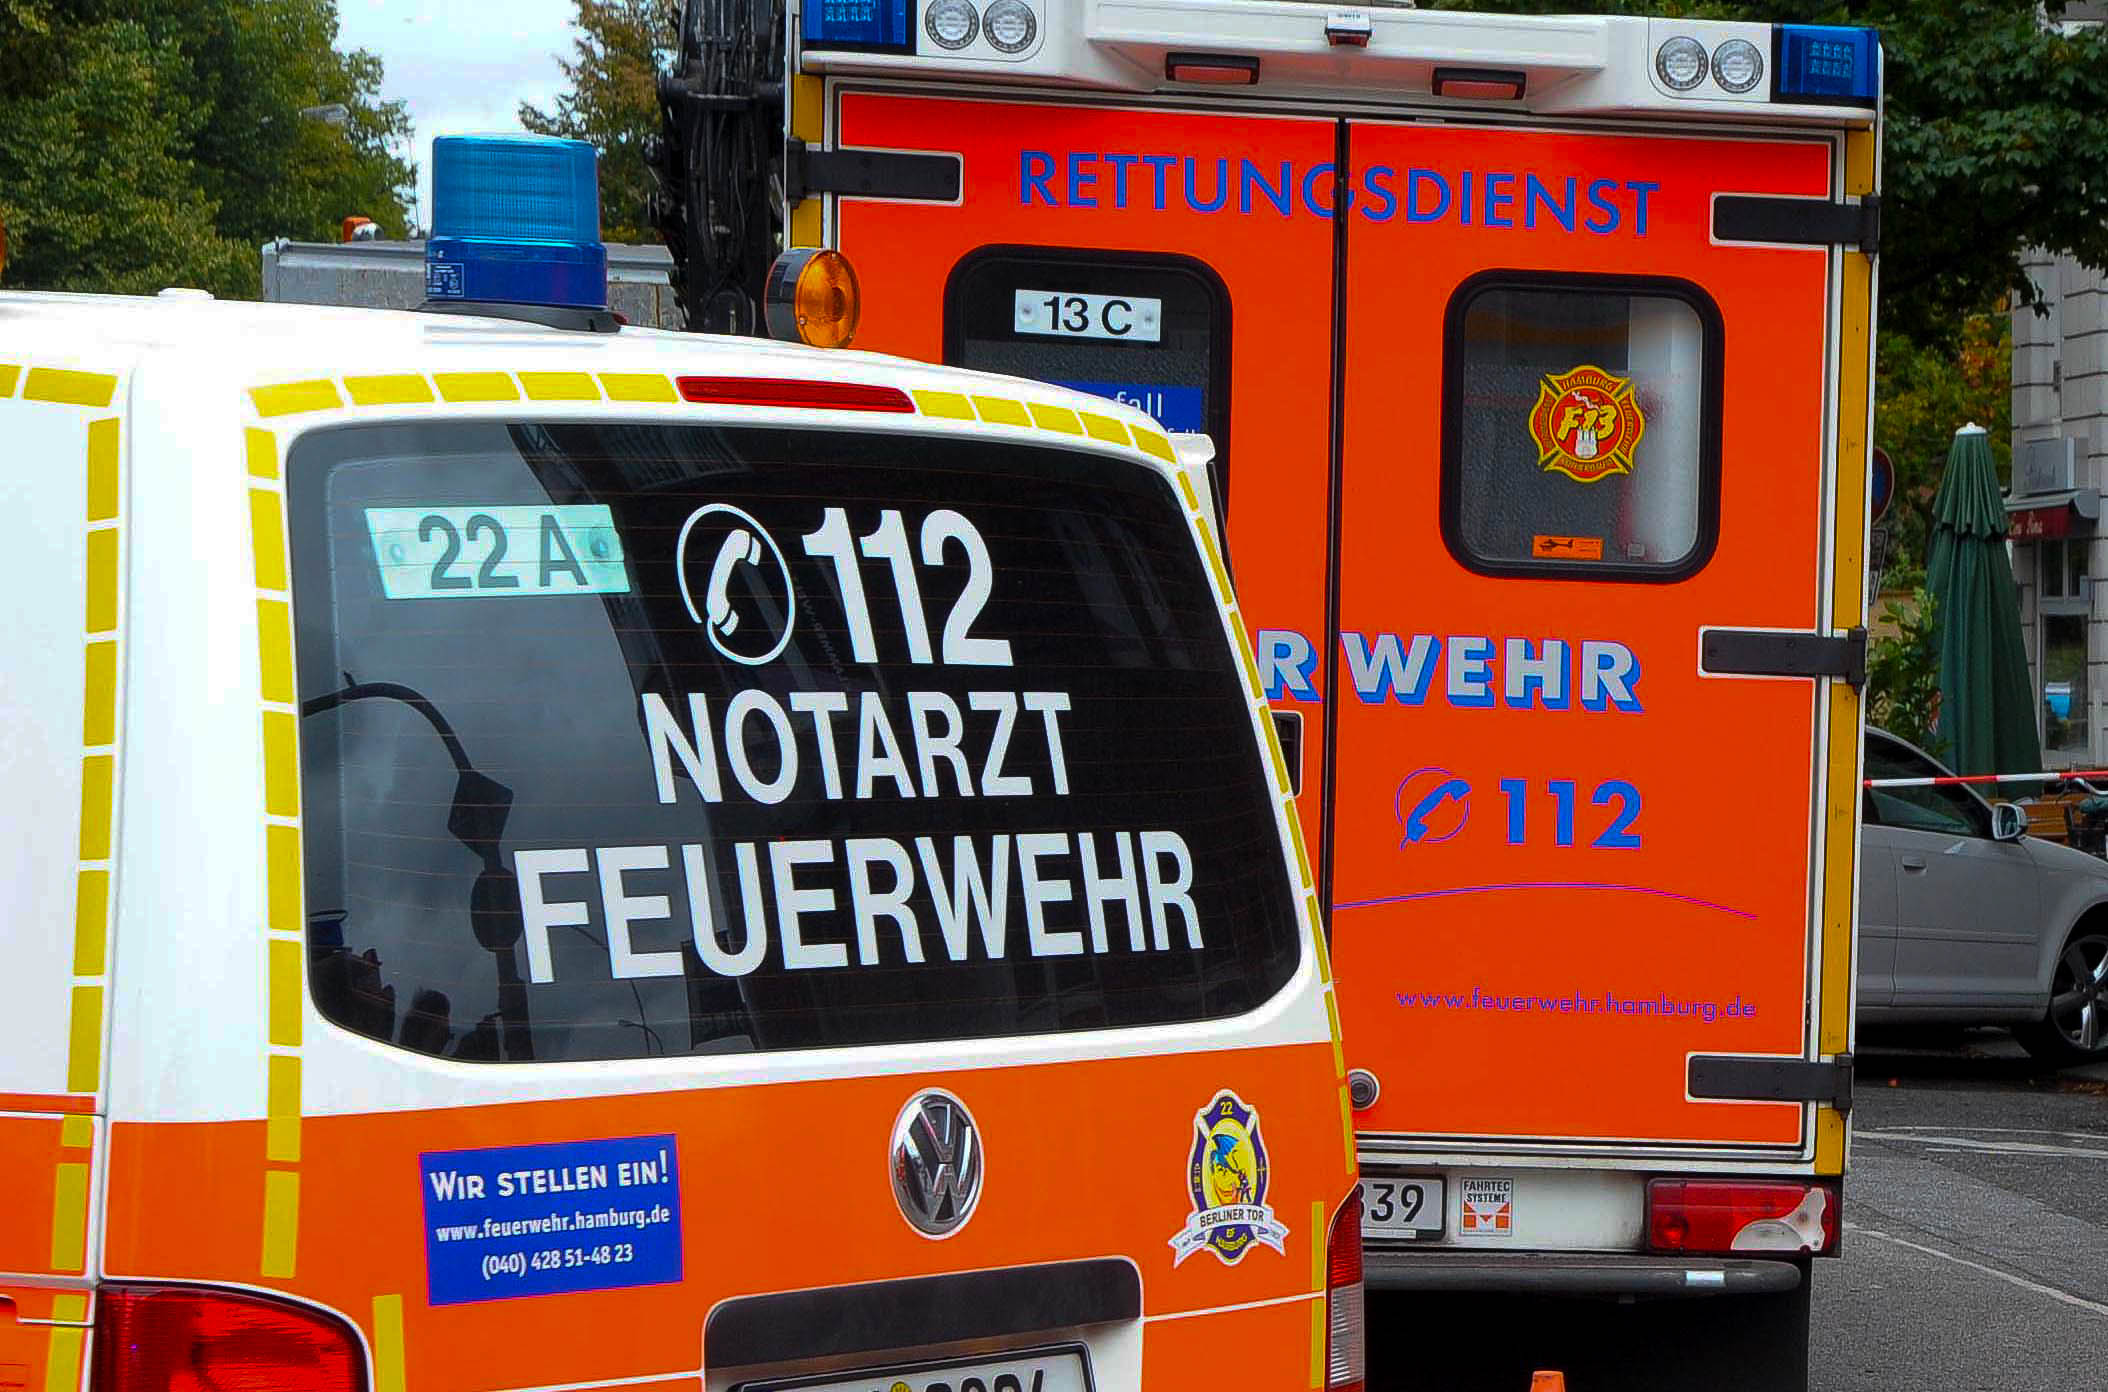 Küchnbrand in Wohnung in Rothenburgsort – Bewohner mit Verbrennungen n Hand in Klinik